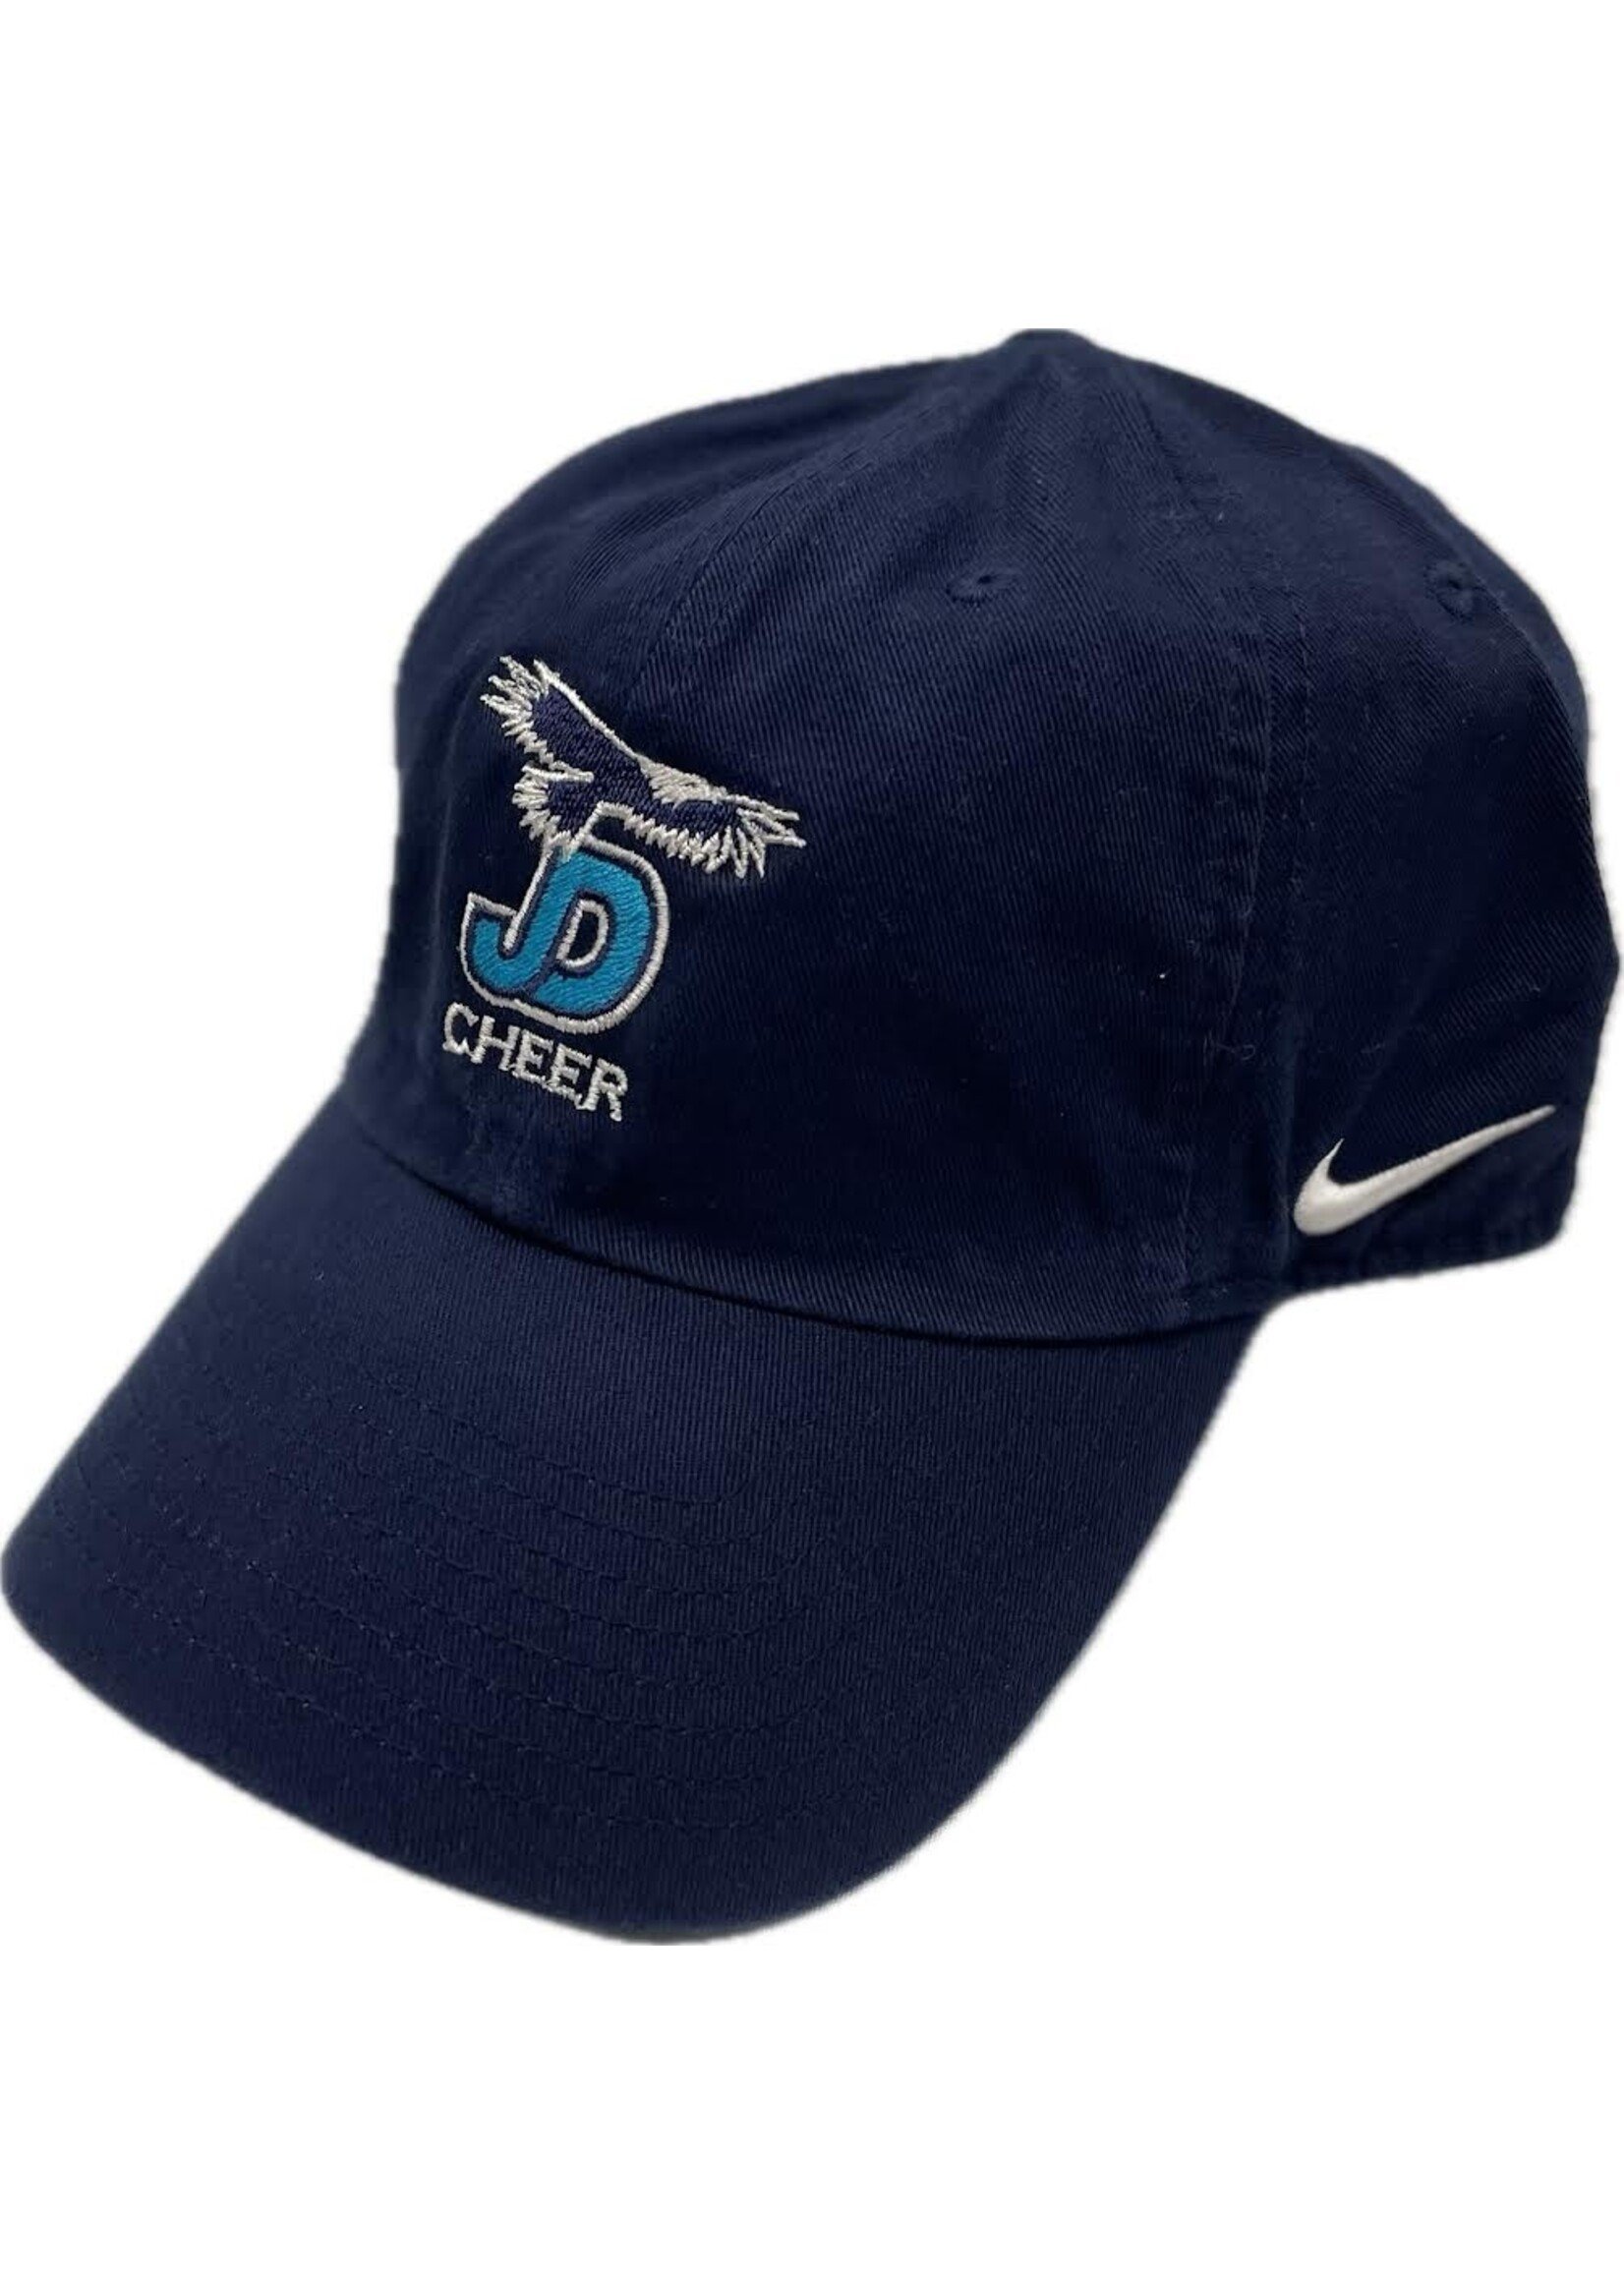 NON-UNIFORM Hat - Custom Nike Cheer Campus Cap - Men’s/Unisex